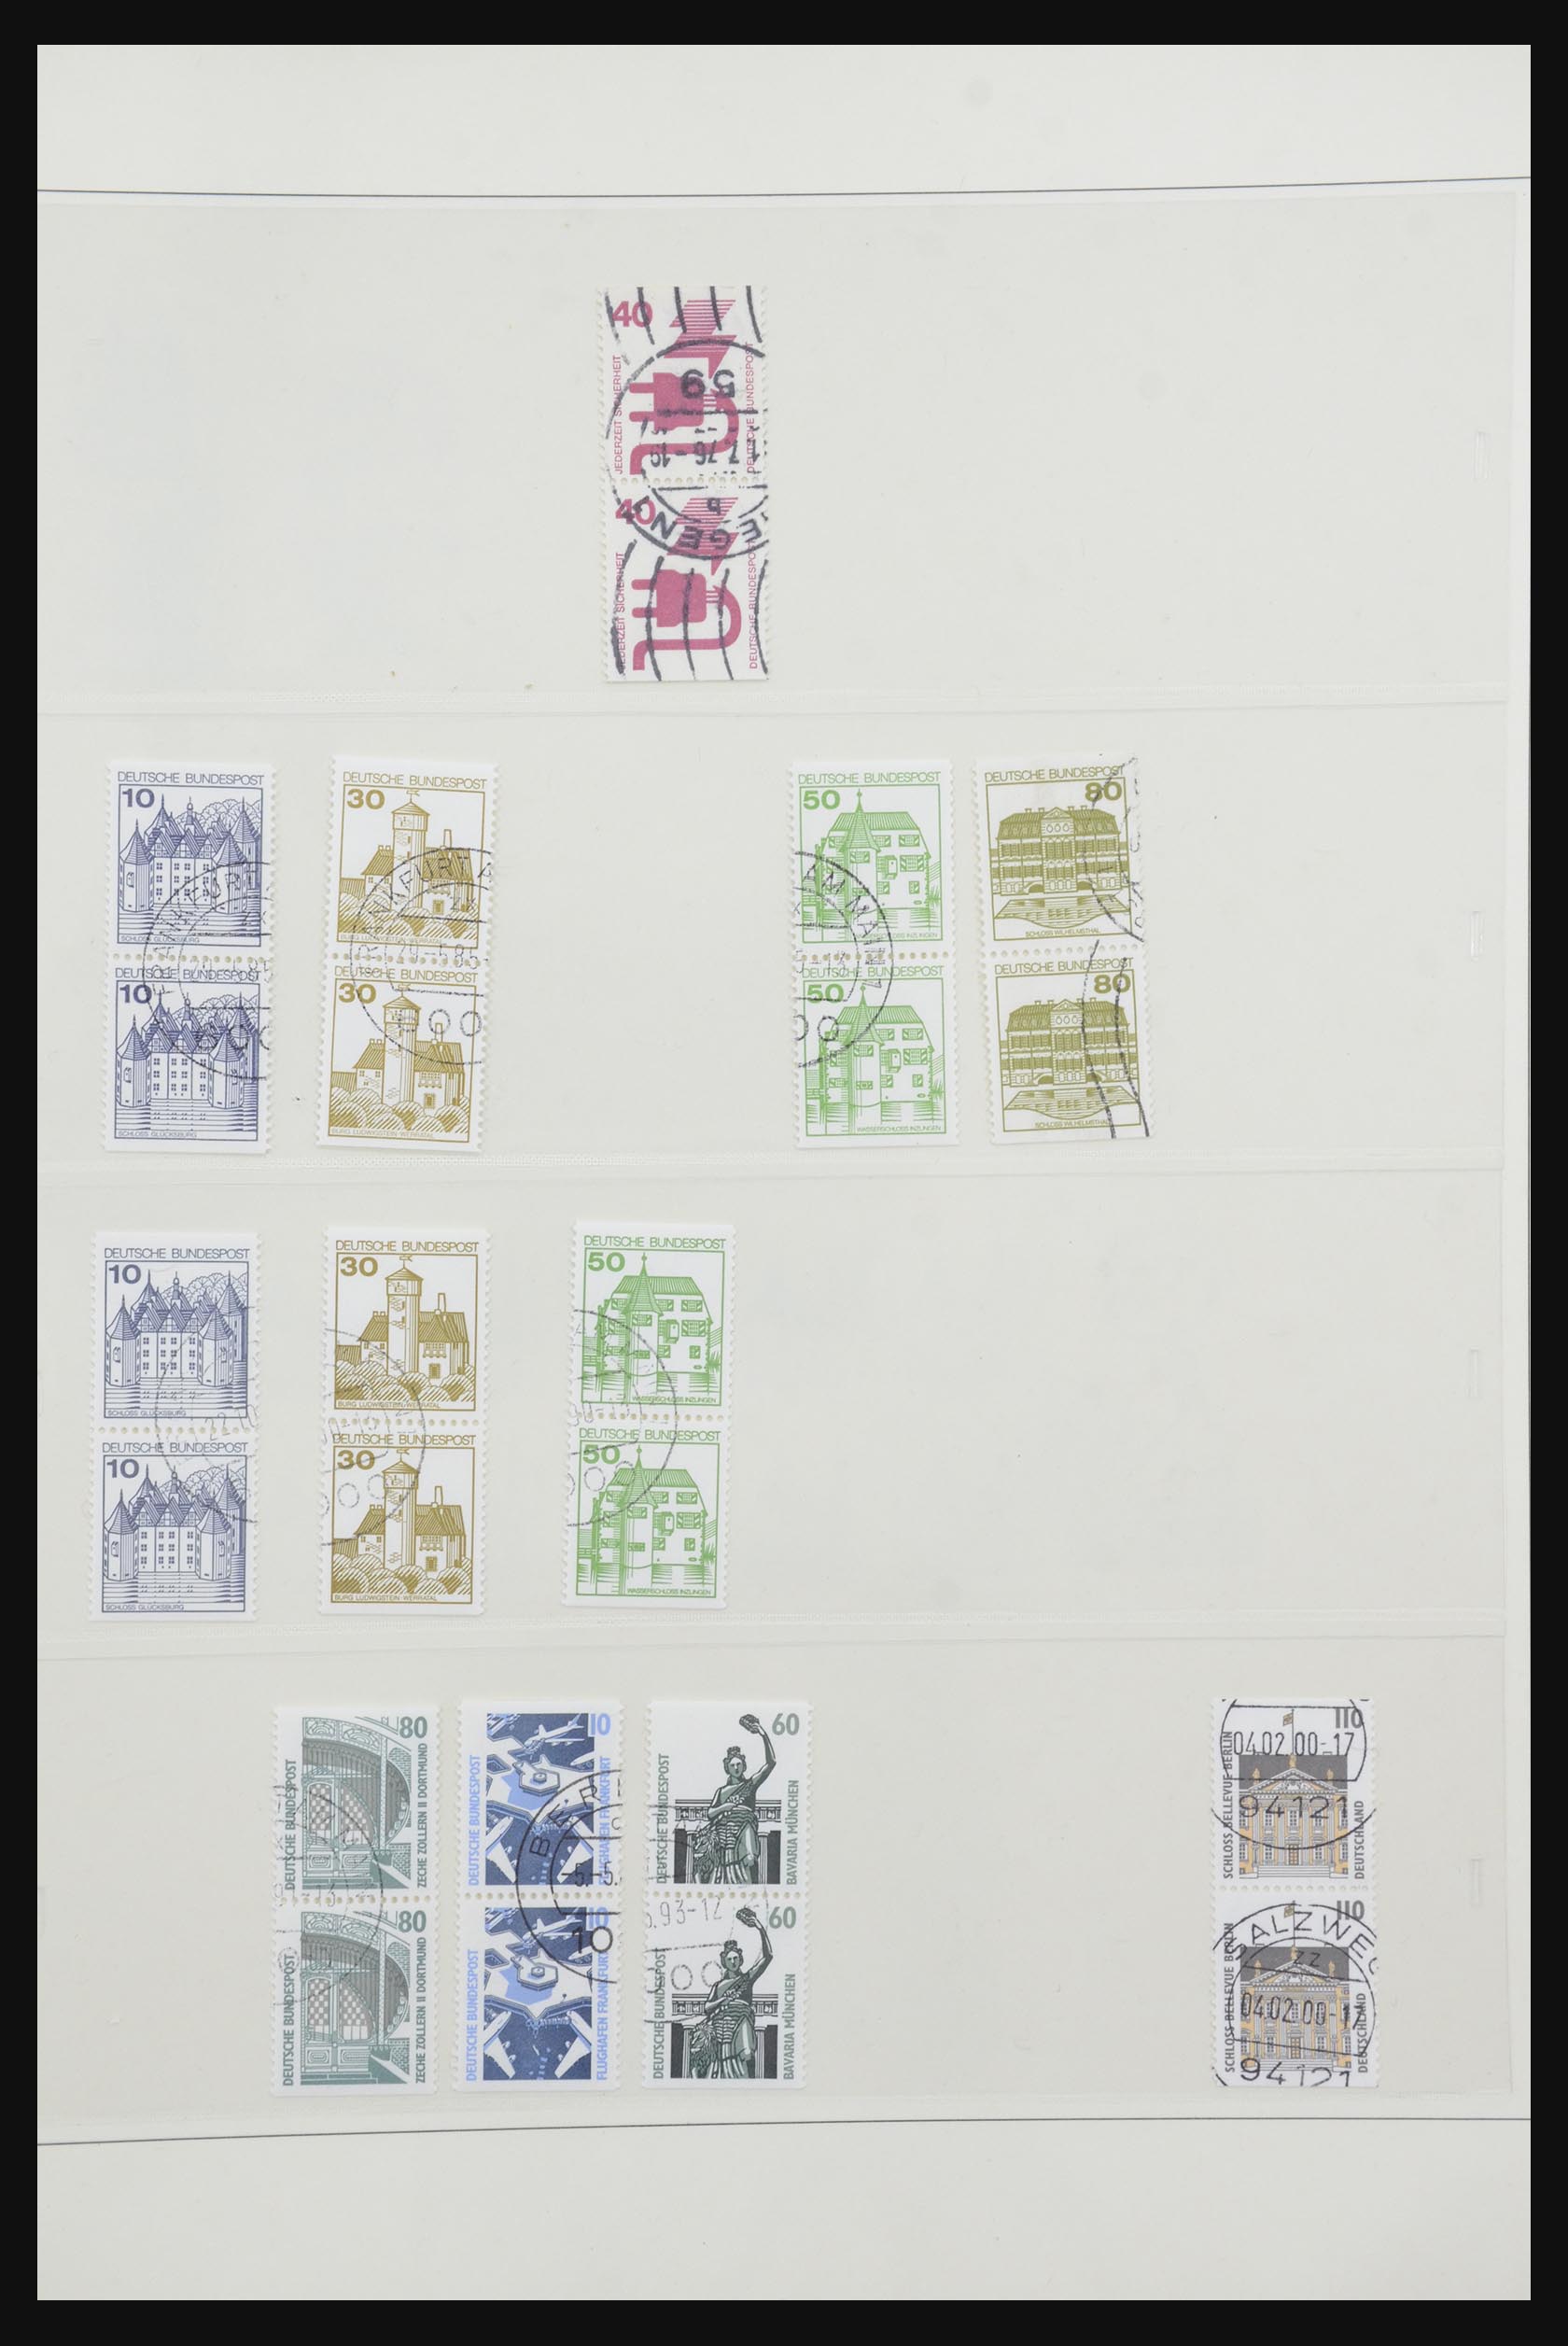 31842 088 - 31842 Bundespost combinations 1951-2003.